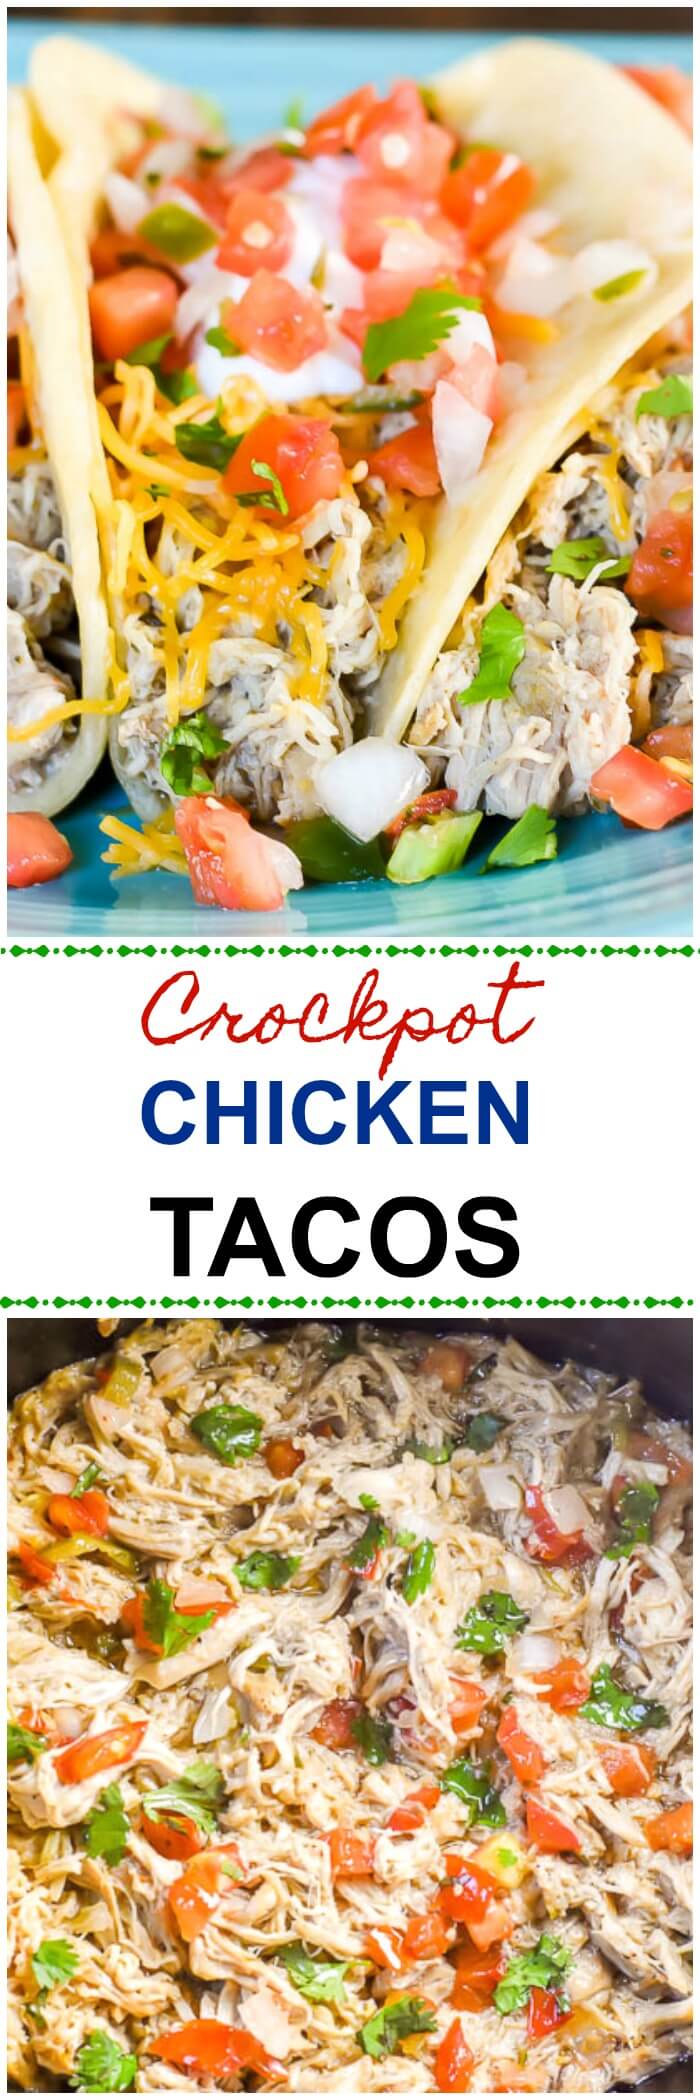 Crockpot Chicken Tacos